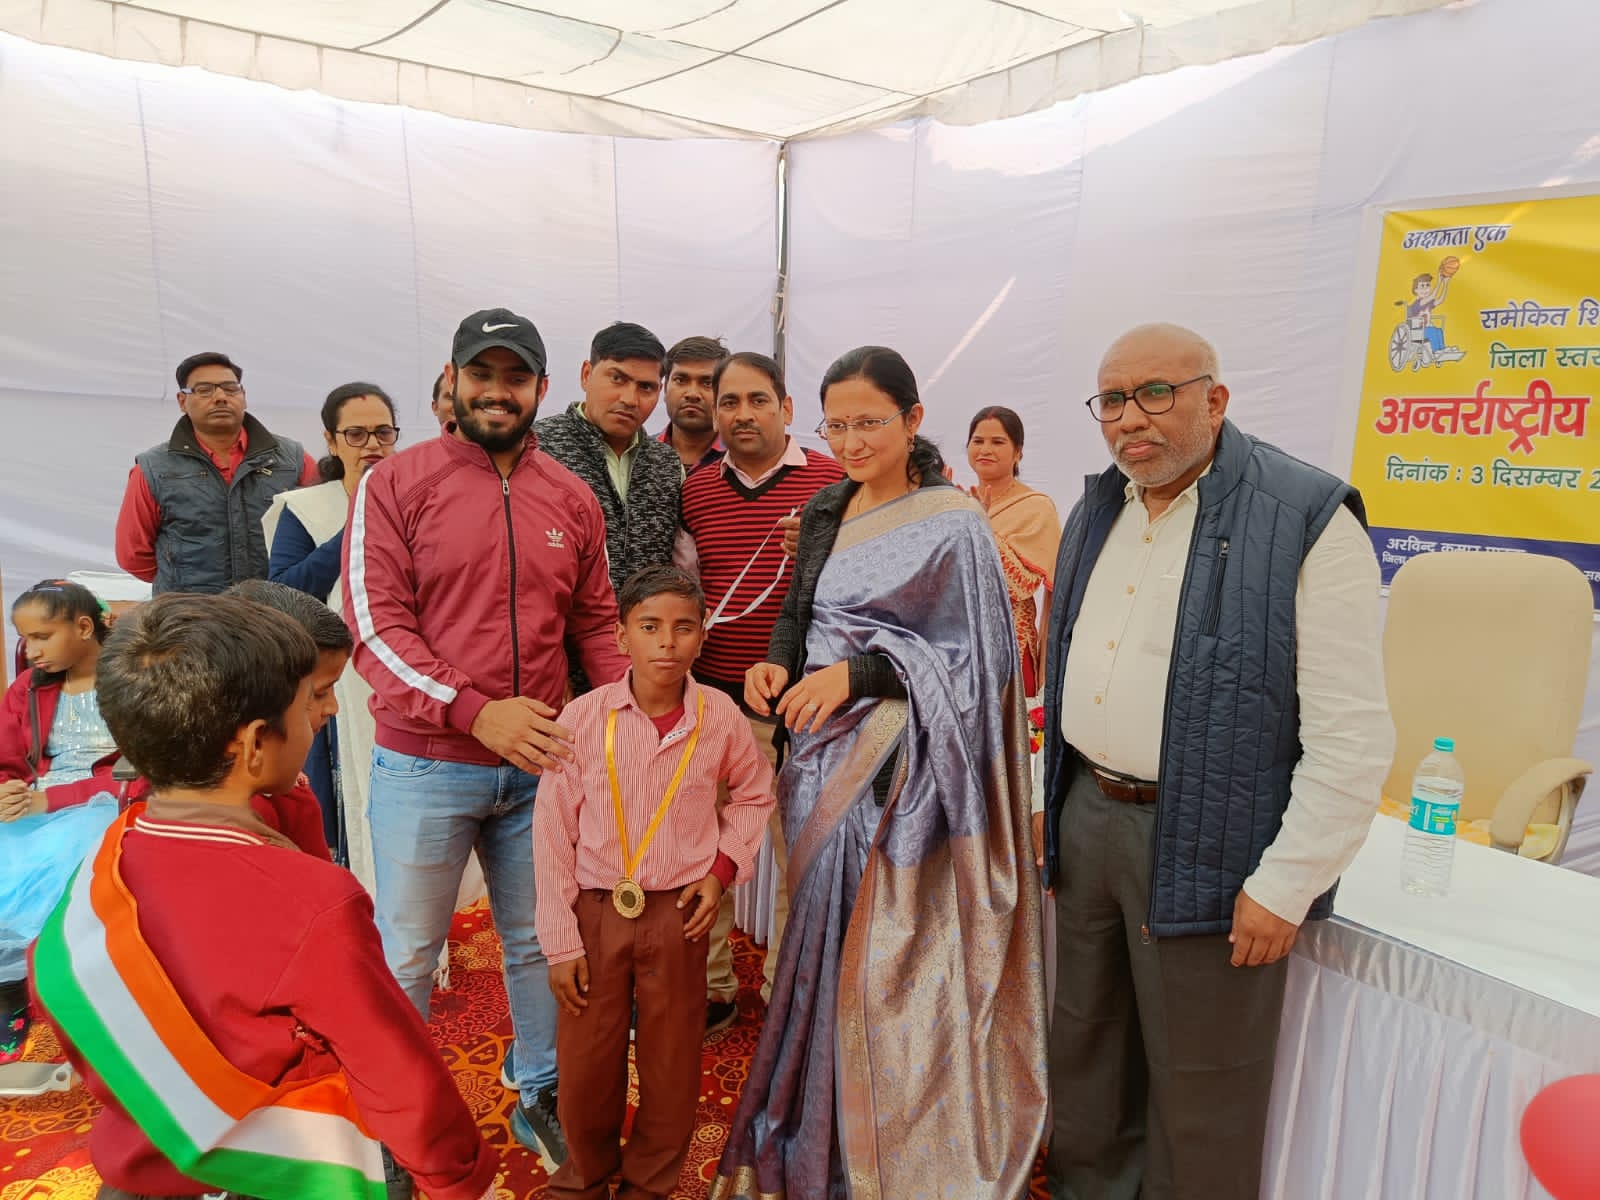 Greater Noida News : स्पेशल बच्चो को कराया स्पेशल महसूस – बच्चों के साथ मिलकर मनाया विश्व दिव्यांग दिवस, बीएसए ने सम्मानित किया